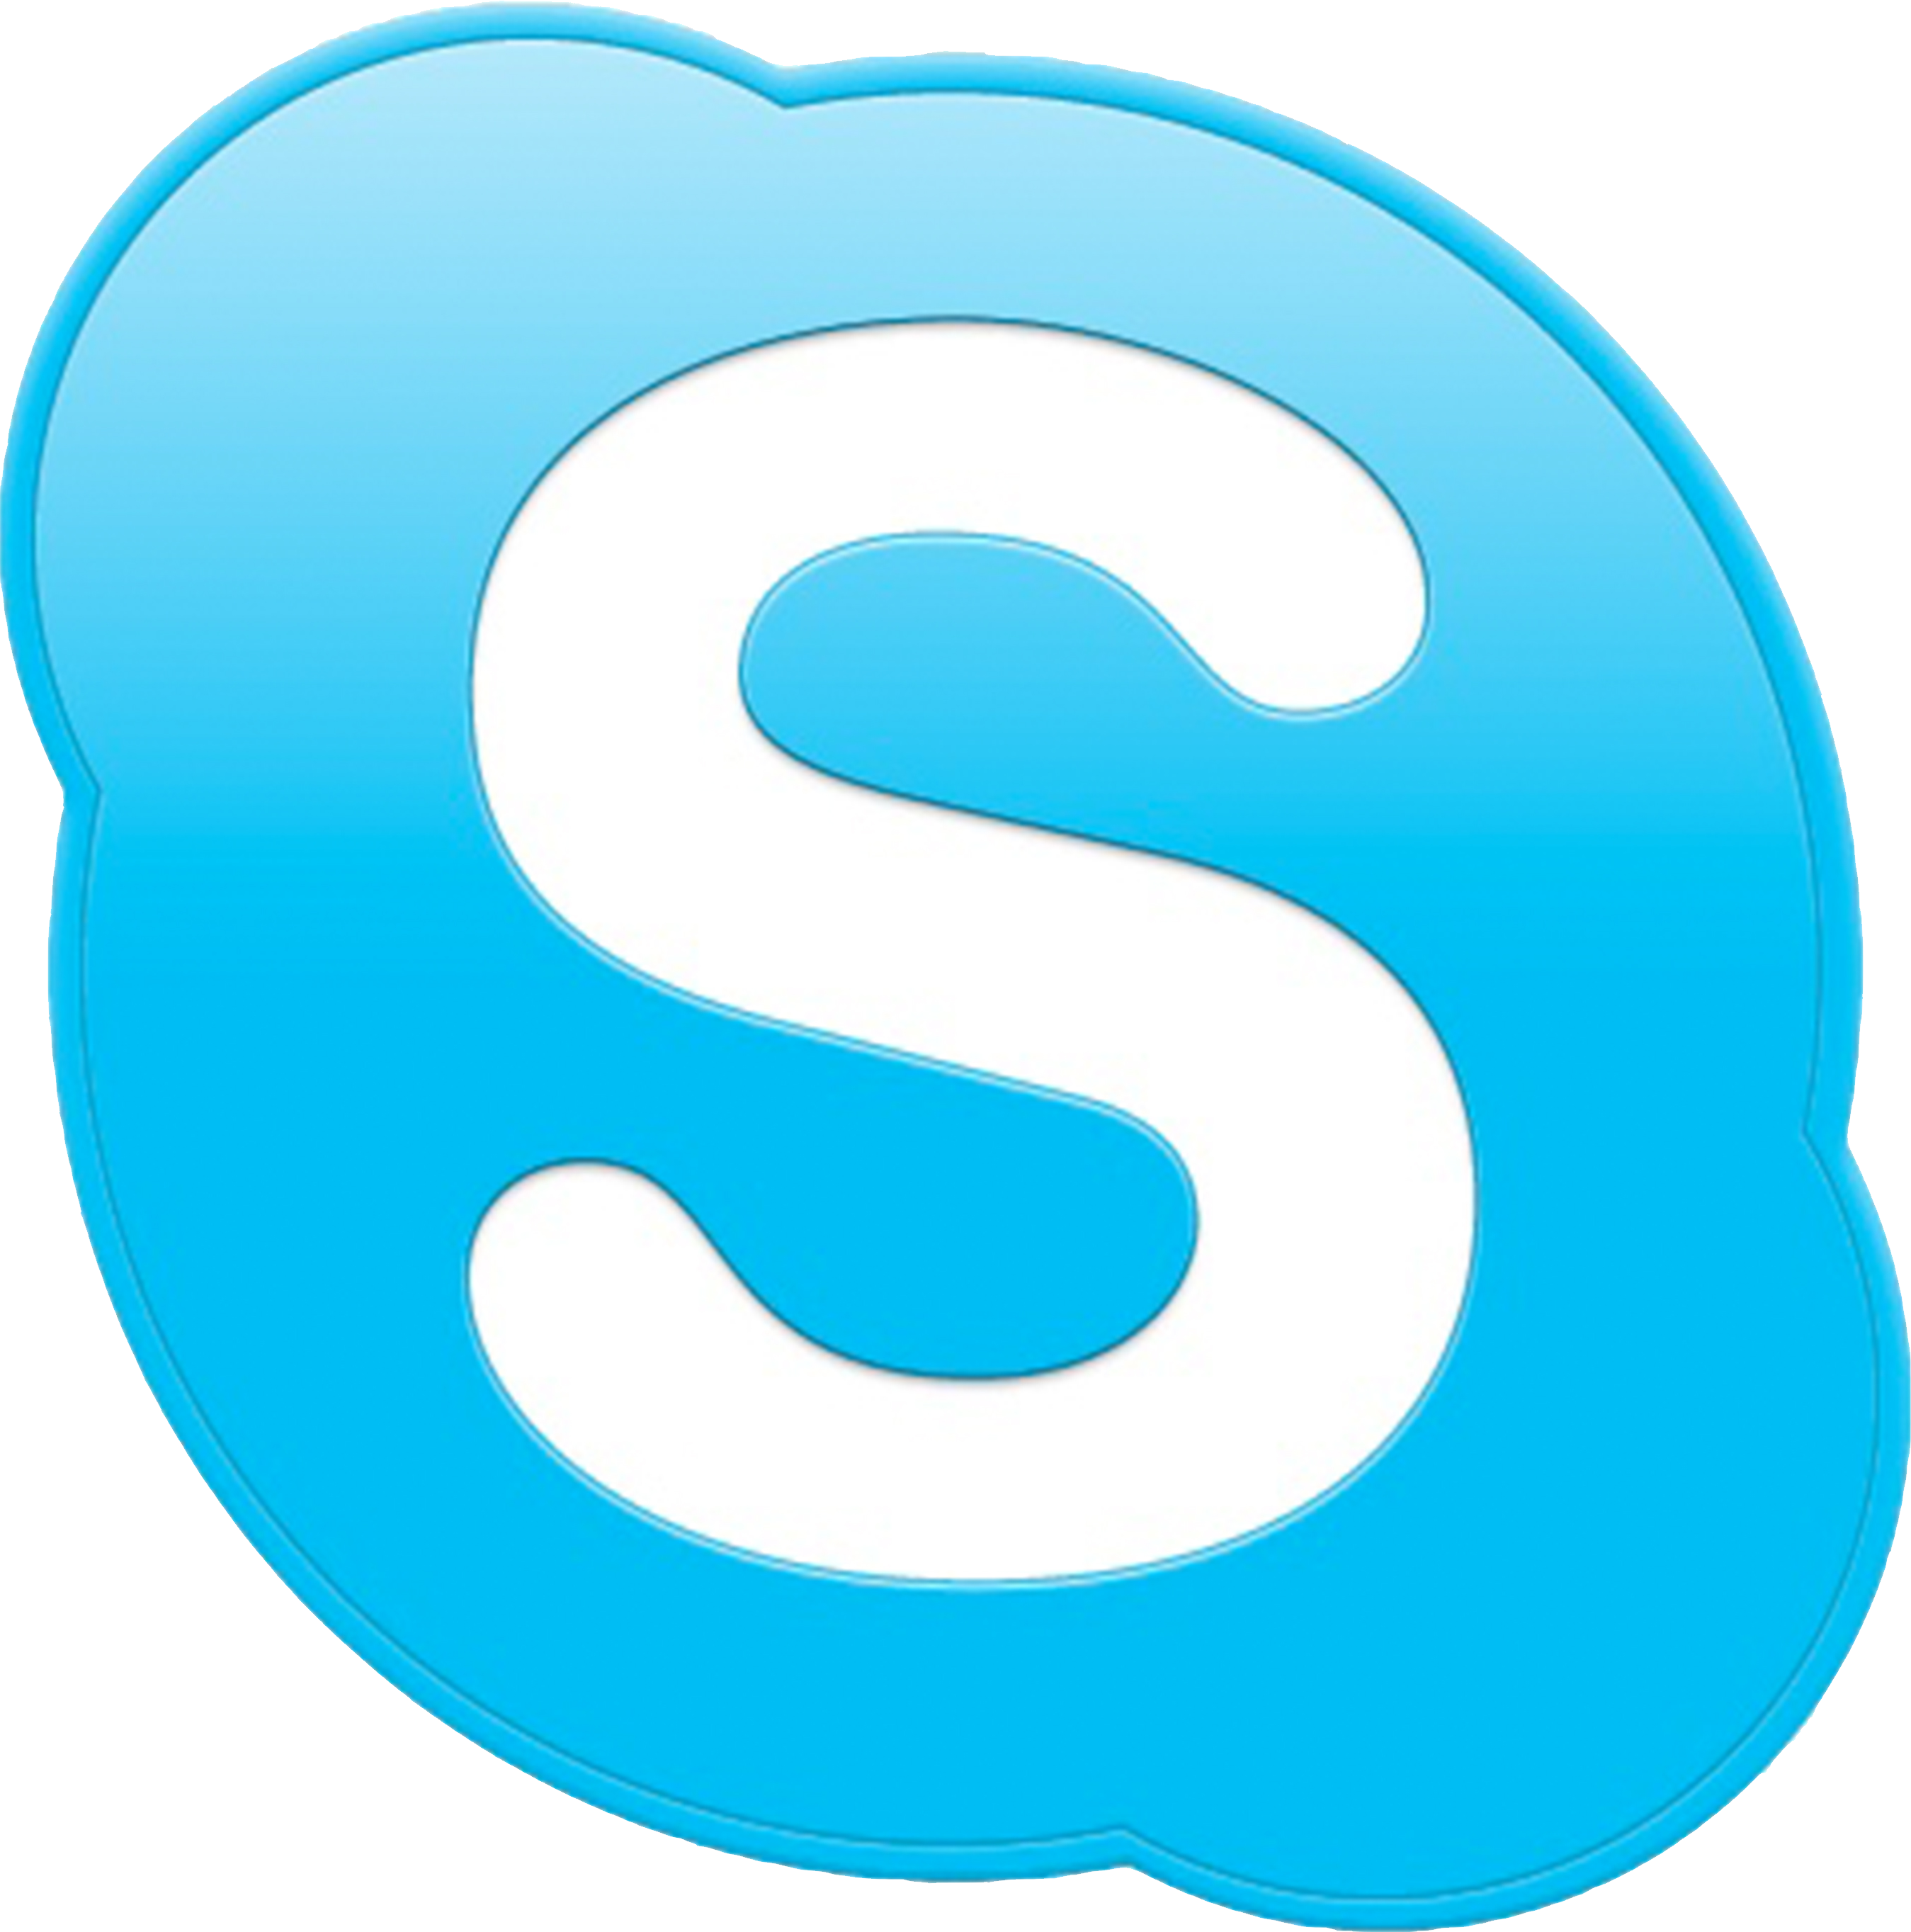 Communication skype Icon